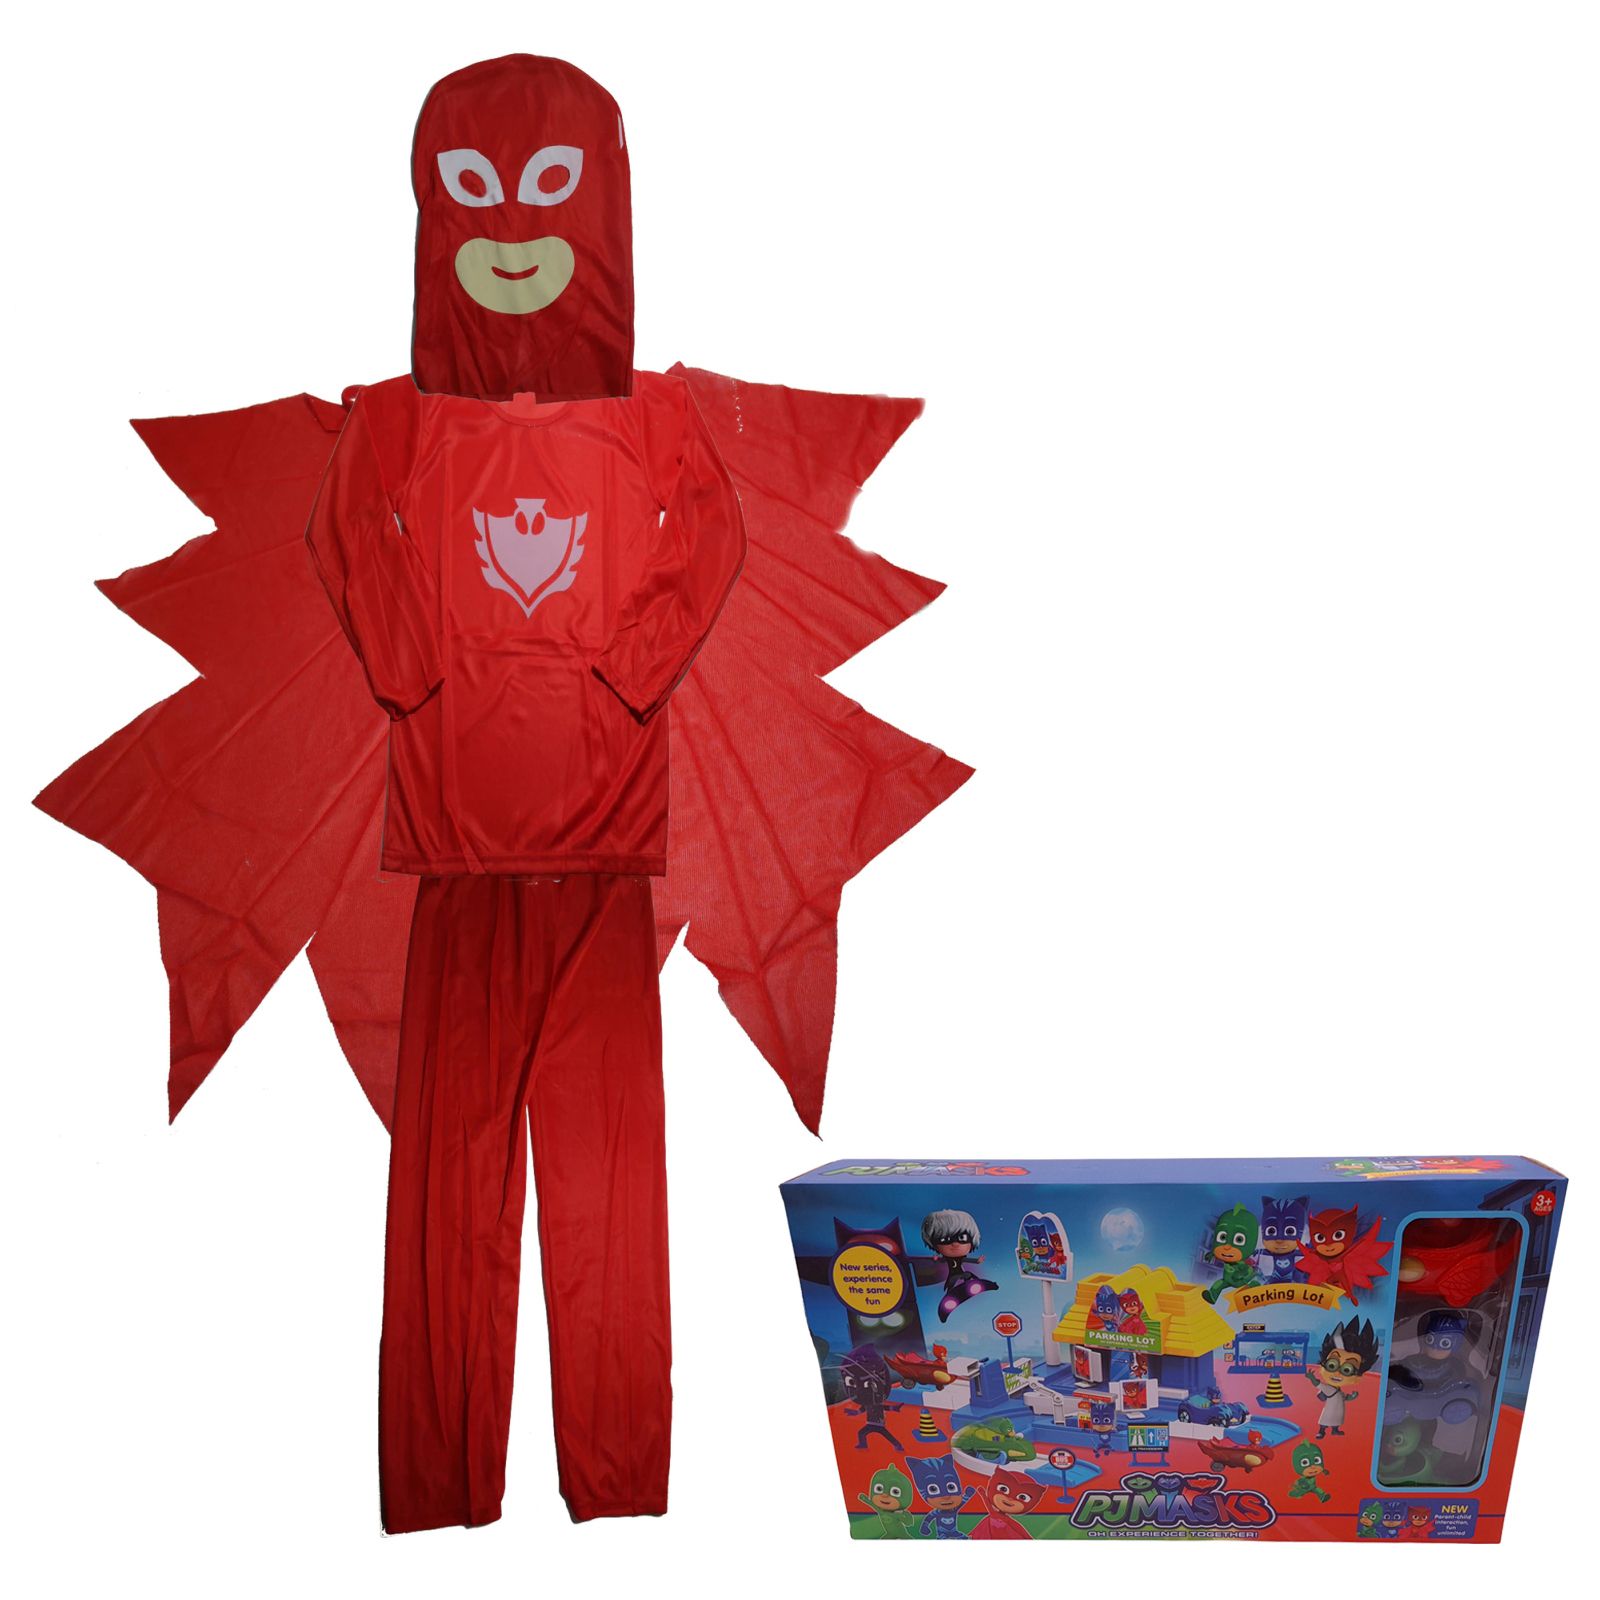 Costum pentru copii, Red Owl, 5-7 ani, 110-120, rosu, parcare inclusa